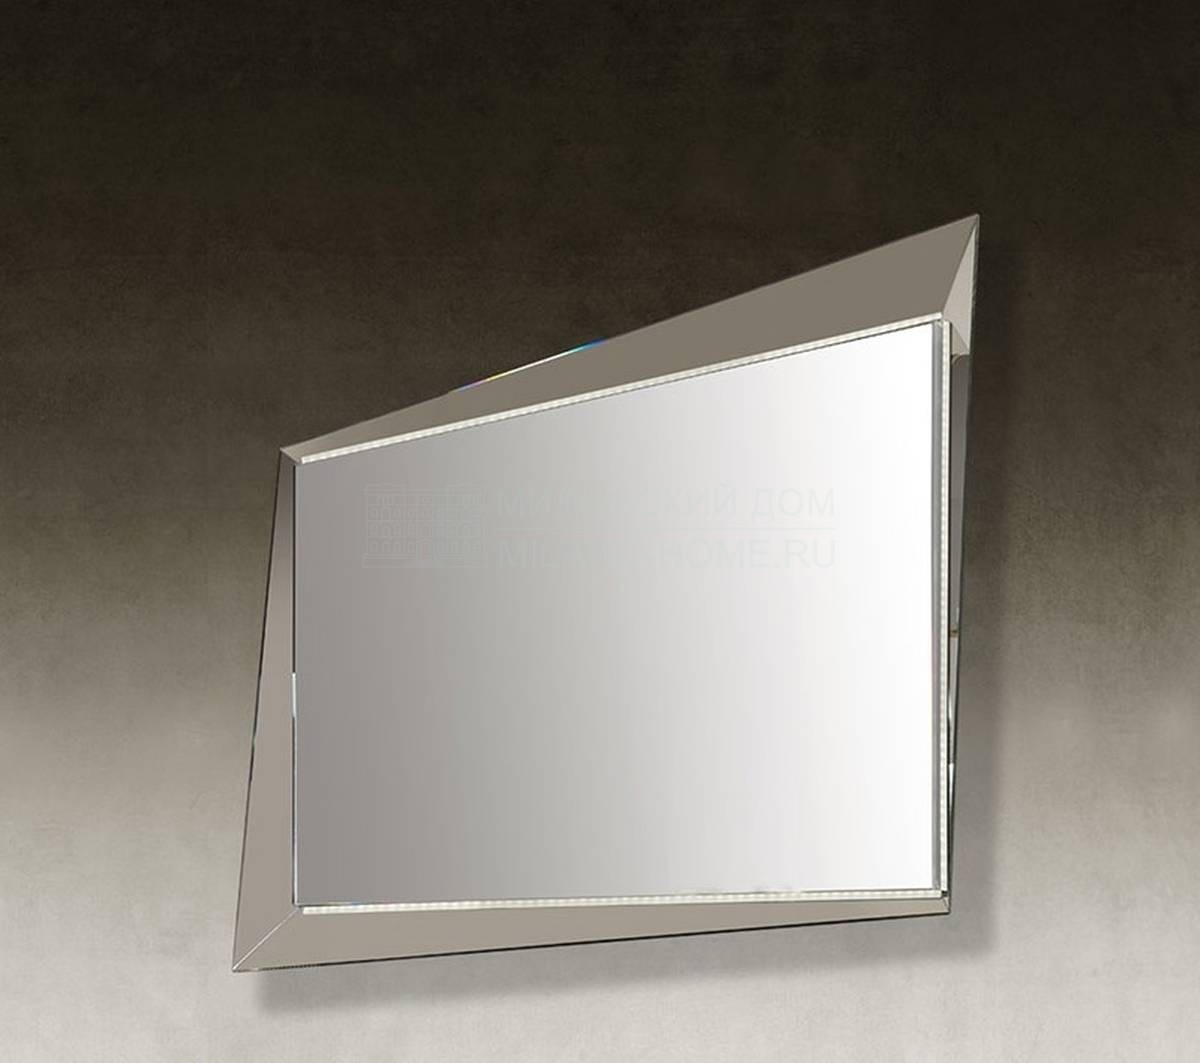 Зеркало настенное Quartz Specchio из Италии фабрики REFLEX ANGELO